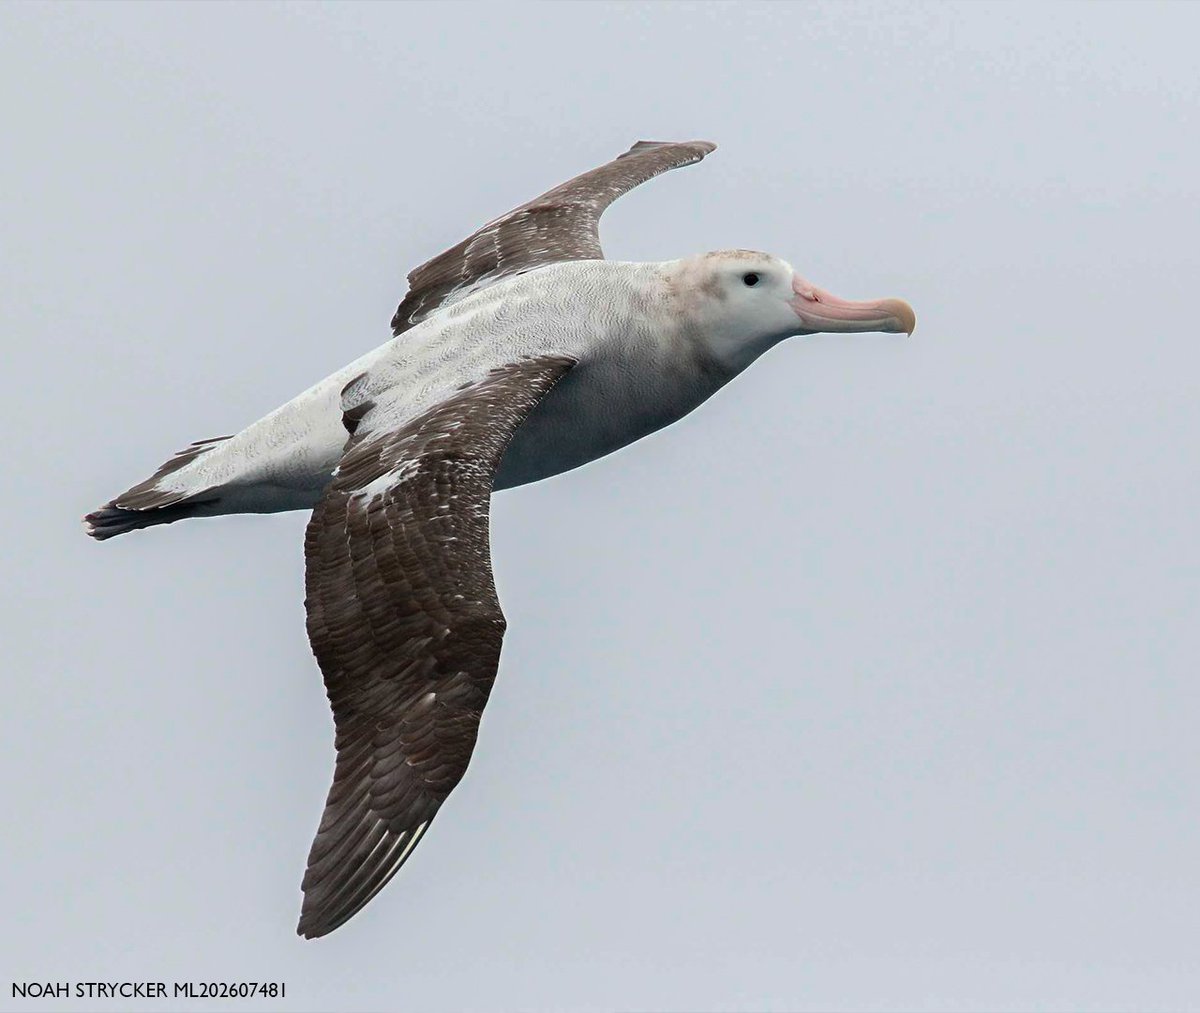 Desde #AvesArgentinas somos parte del #AlbatrossTaskForce, una alianza conocida a nivel mundial gracias a nuestros proyectos de conservación para revertir las amenazas de estas y otras especies marinas 🌊💪